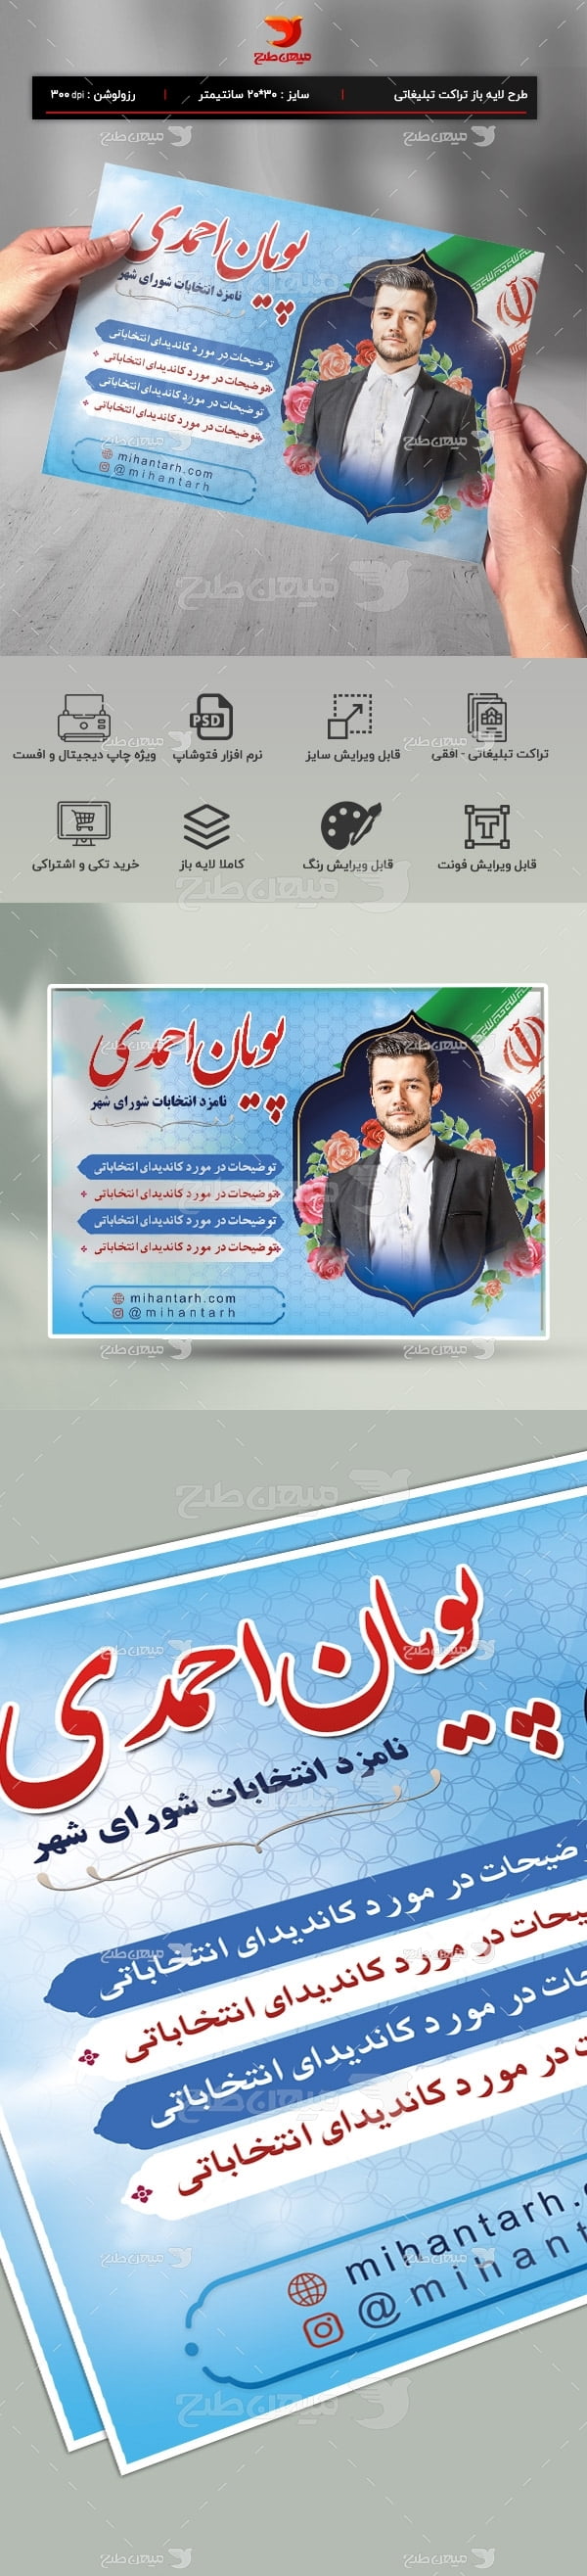 تراکت رنگی انتخابات شورای اسلامی شهر